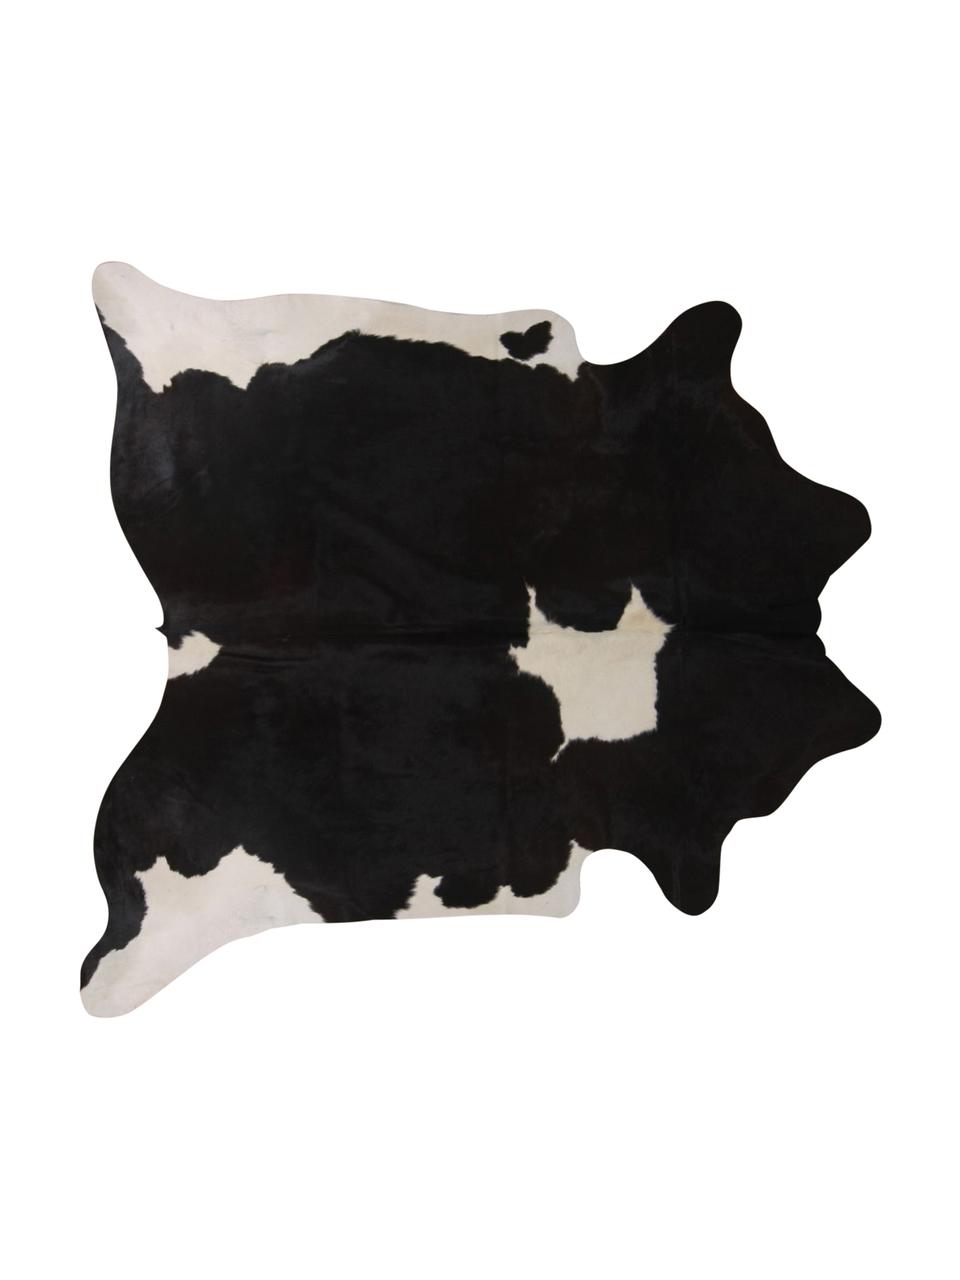 Koberec z hovězí kůže Pisces, Hovězí kuže, Bílá s černými skvrnami, Hovězí kůže, unikát, 966, 160 x 180 cm